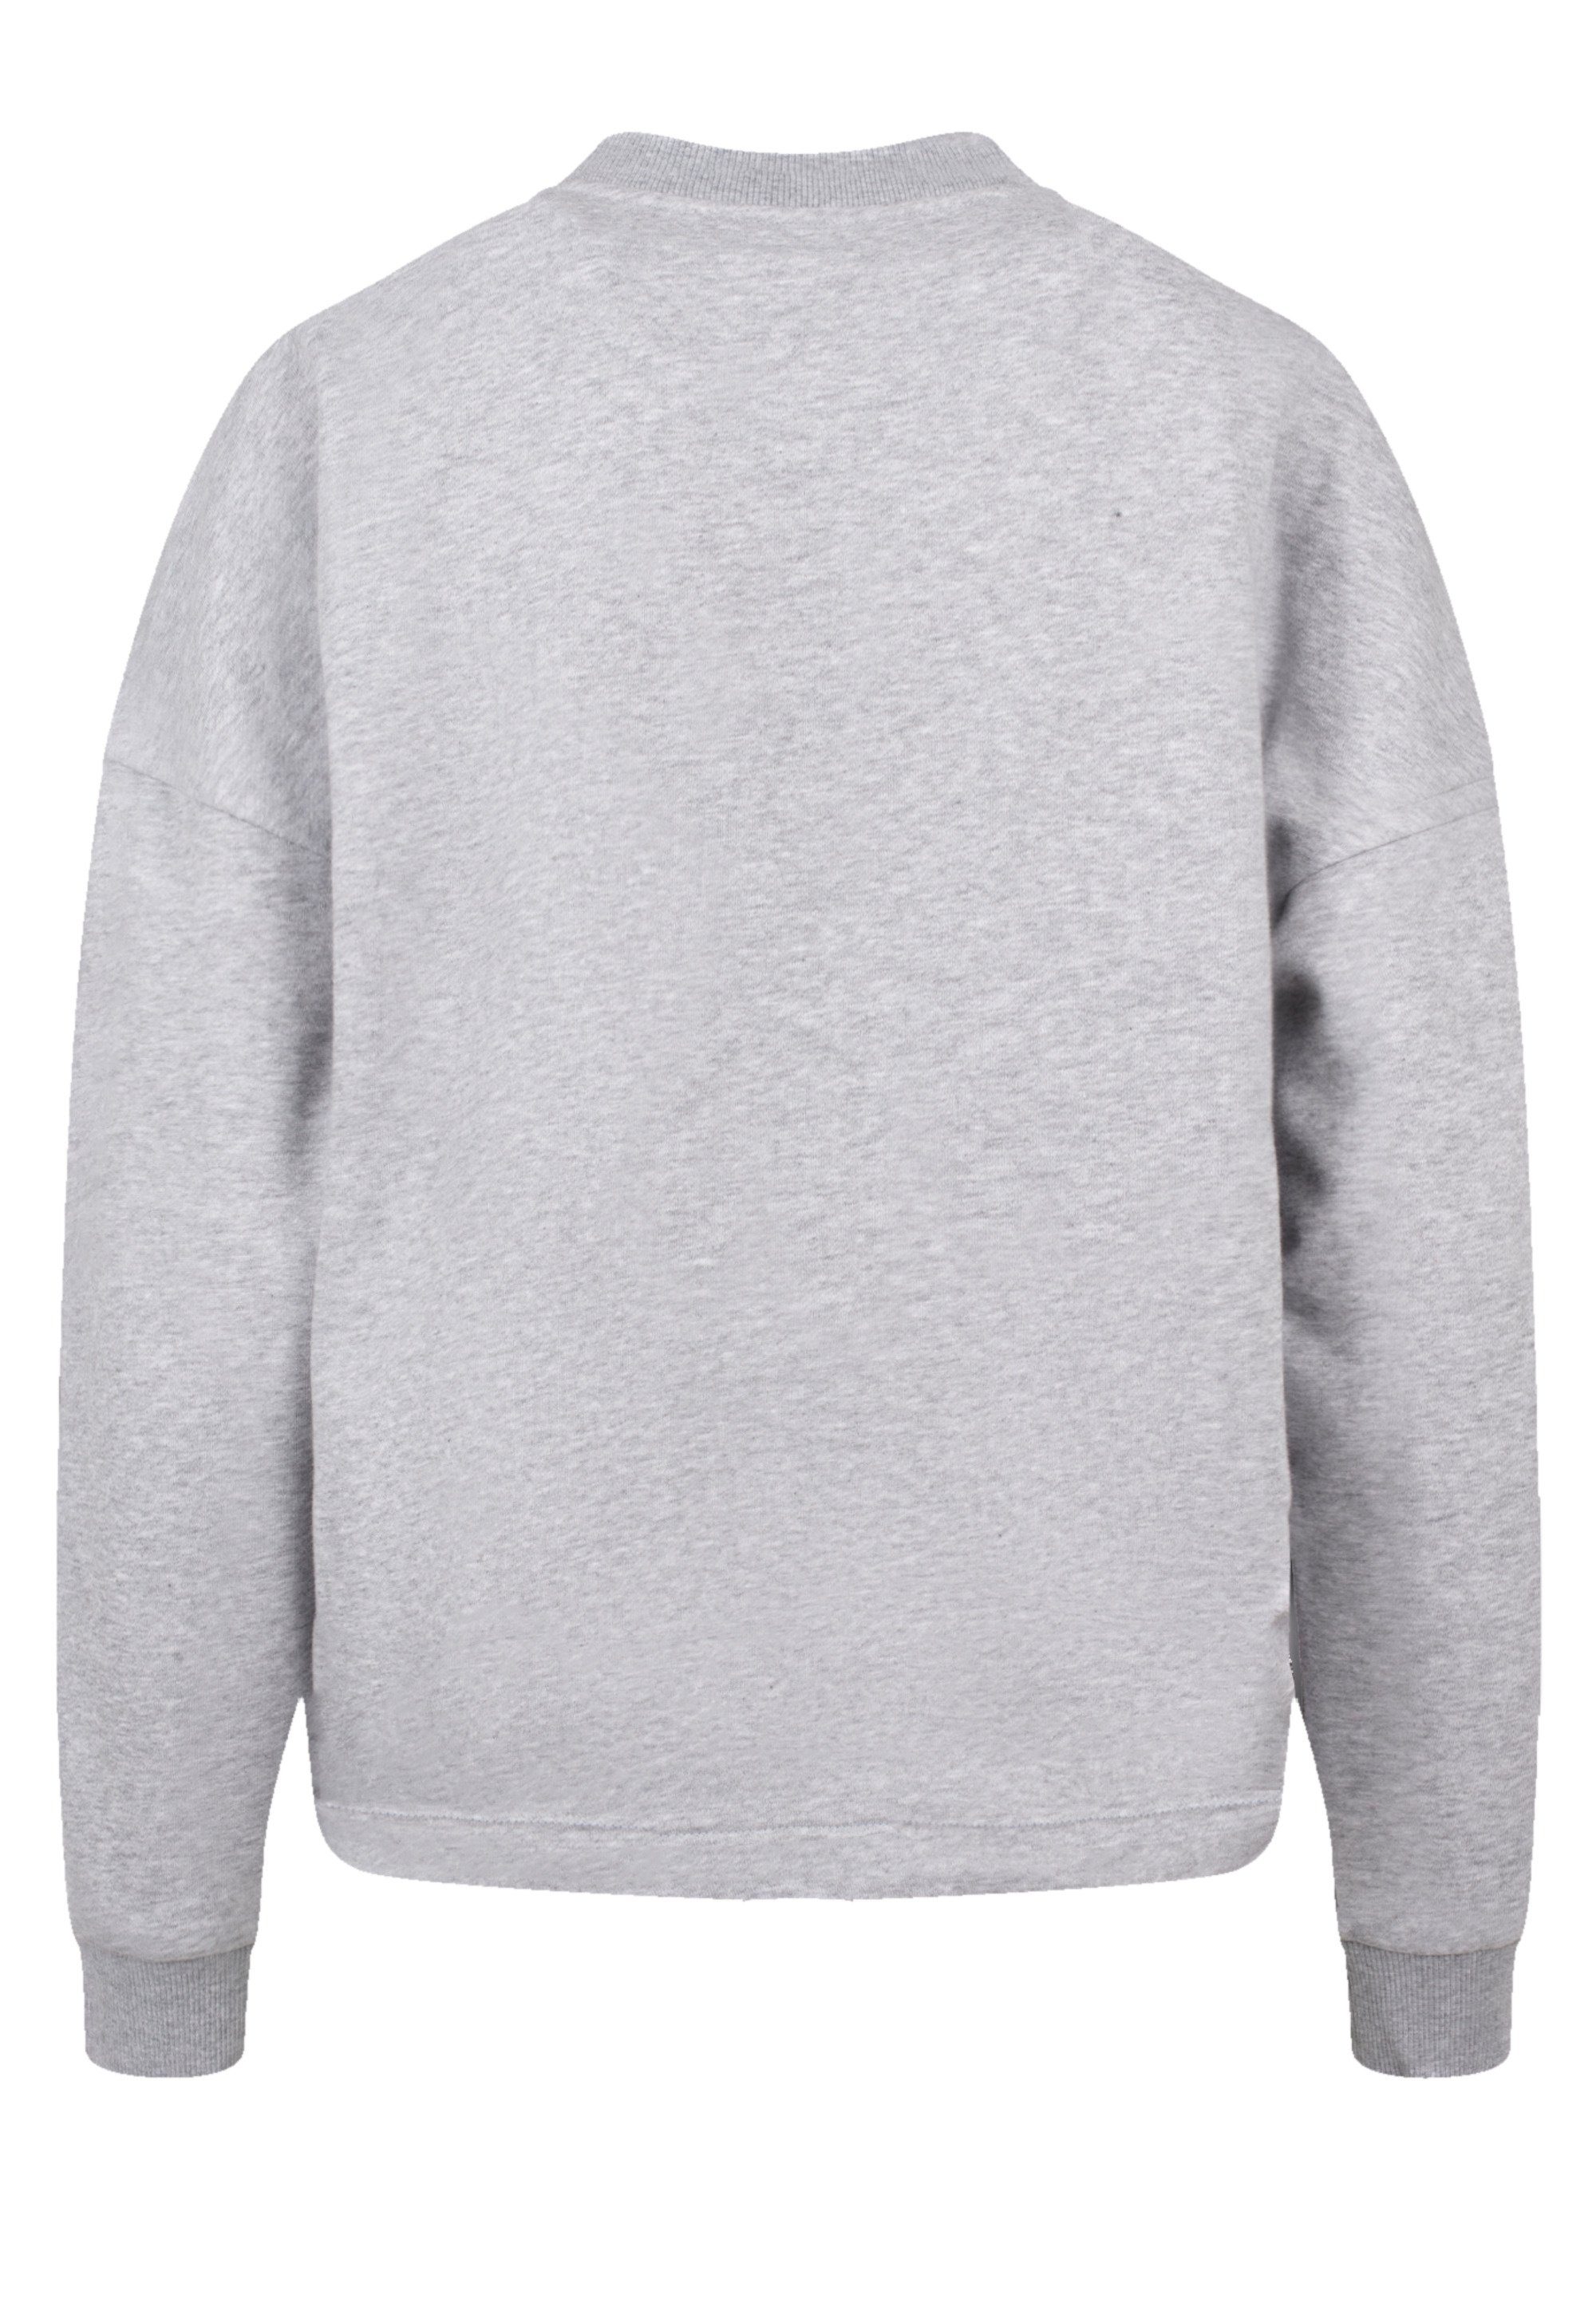 F4NT4STIC Sweatshirt Queen grey Classic Print heather Crest